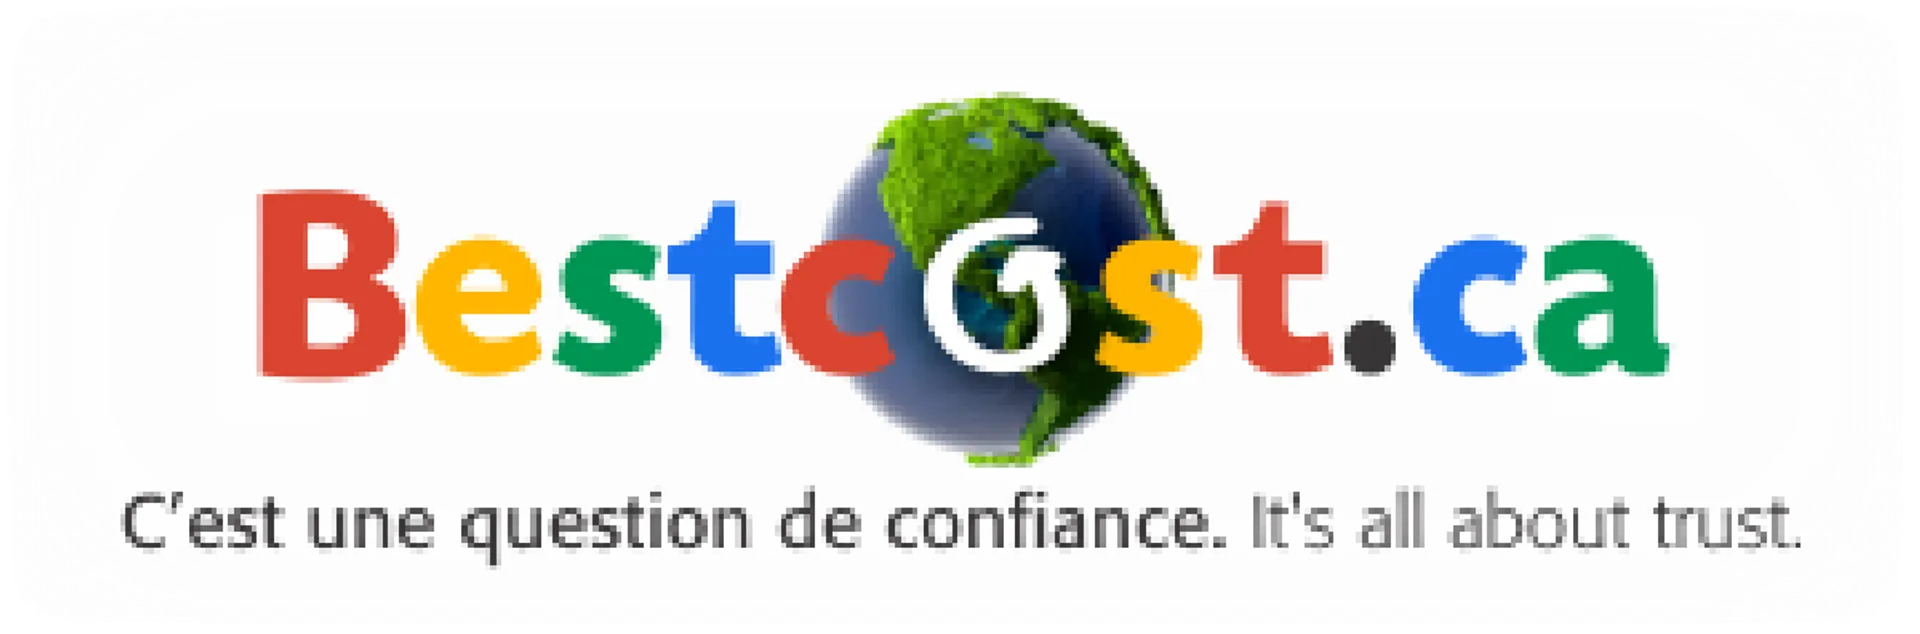 BESTCOST logo de circulaire